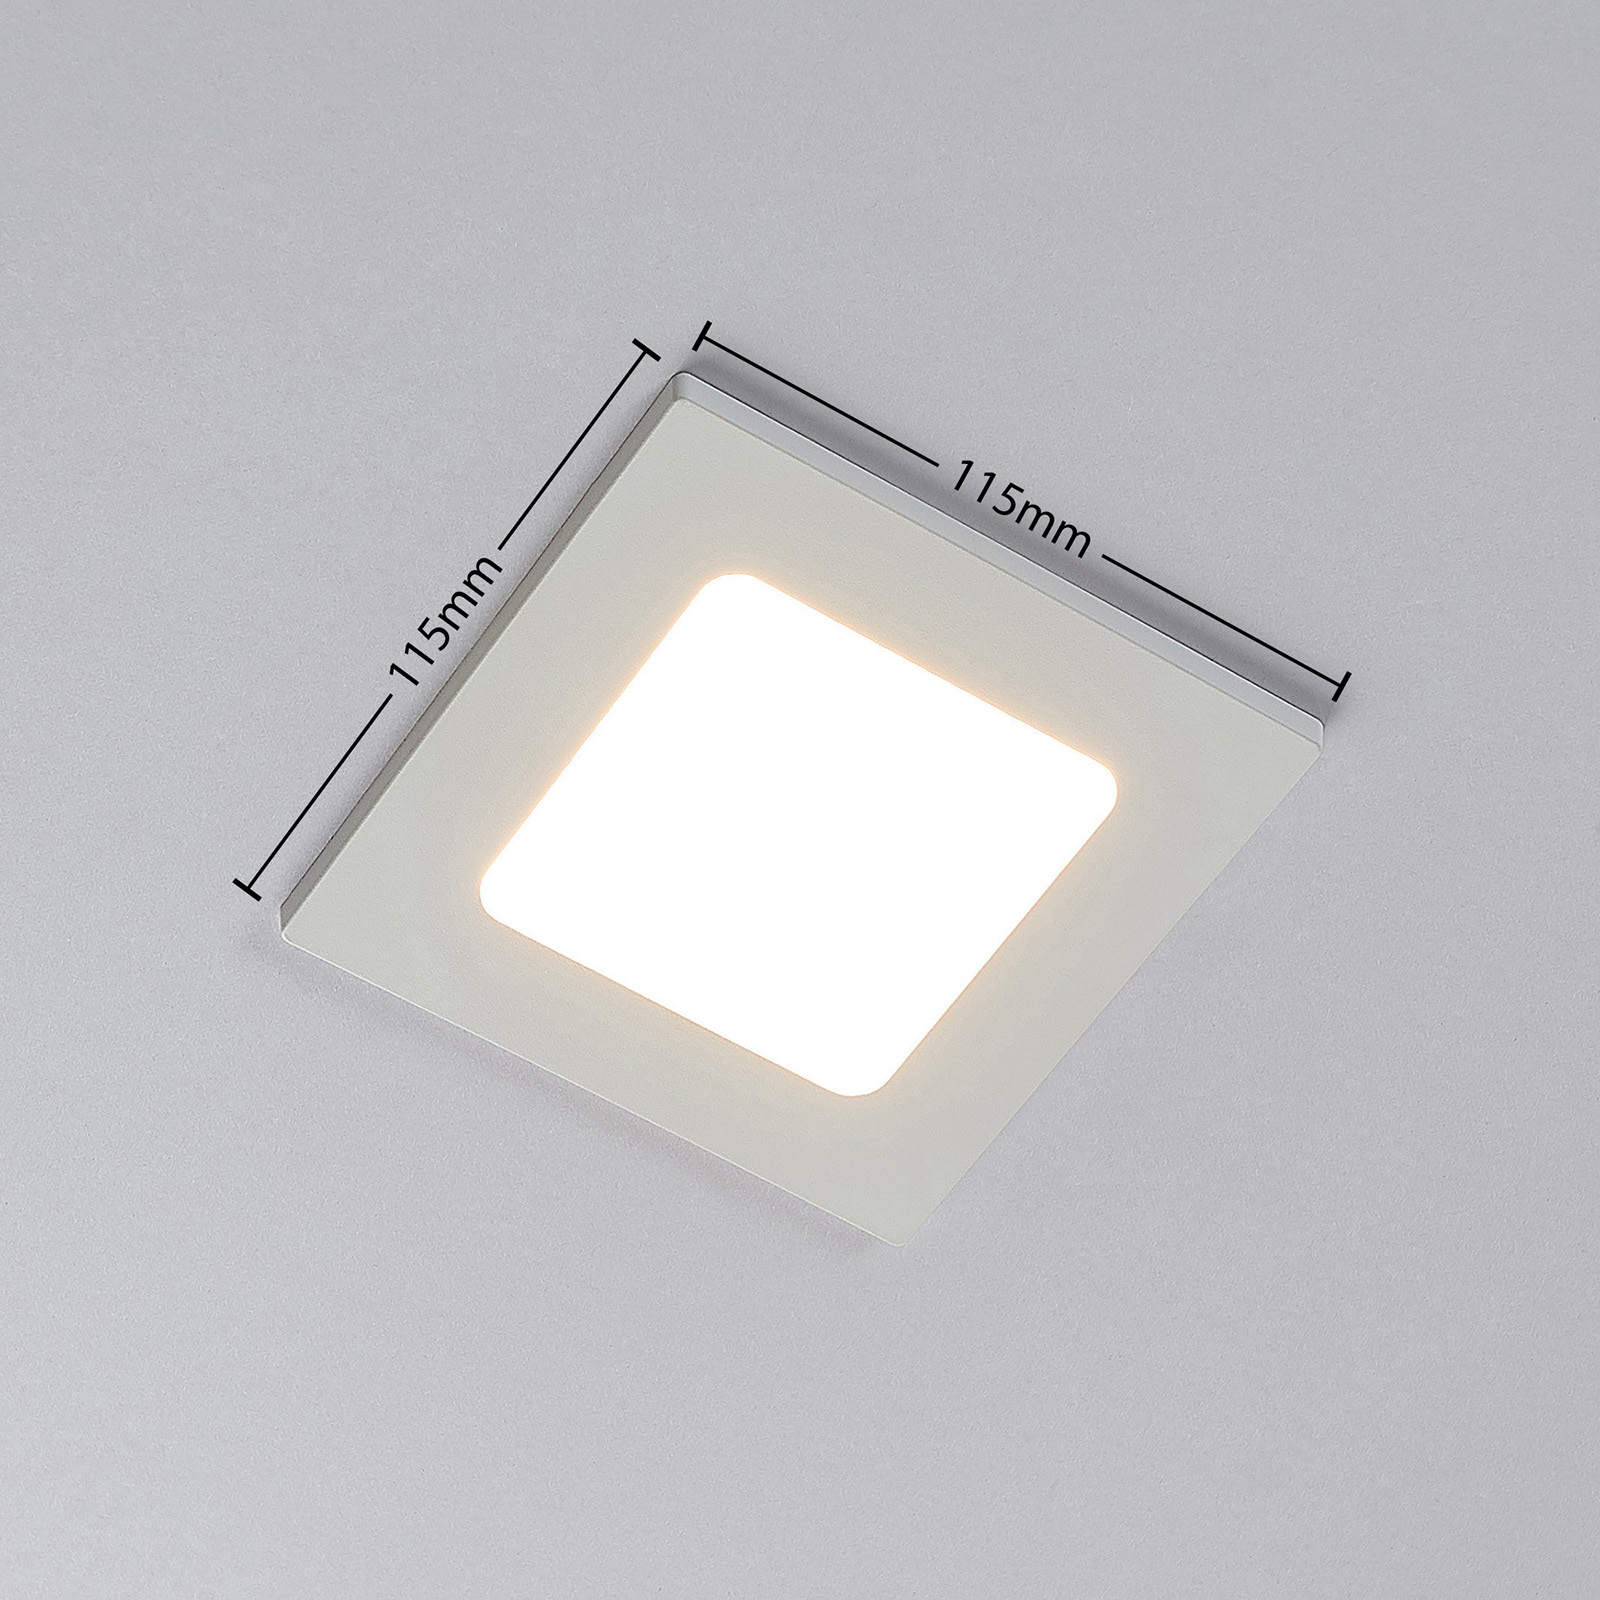 Zapustené LED svetlo Joki biele hranaté 11,5cm